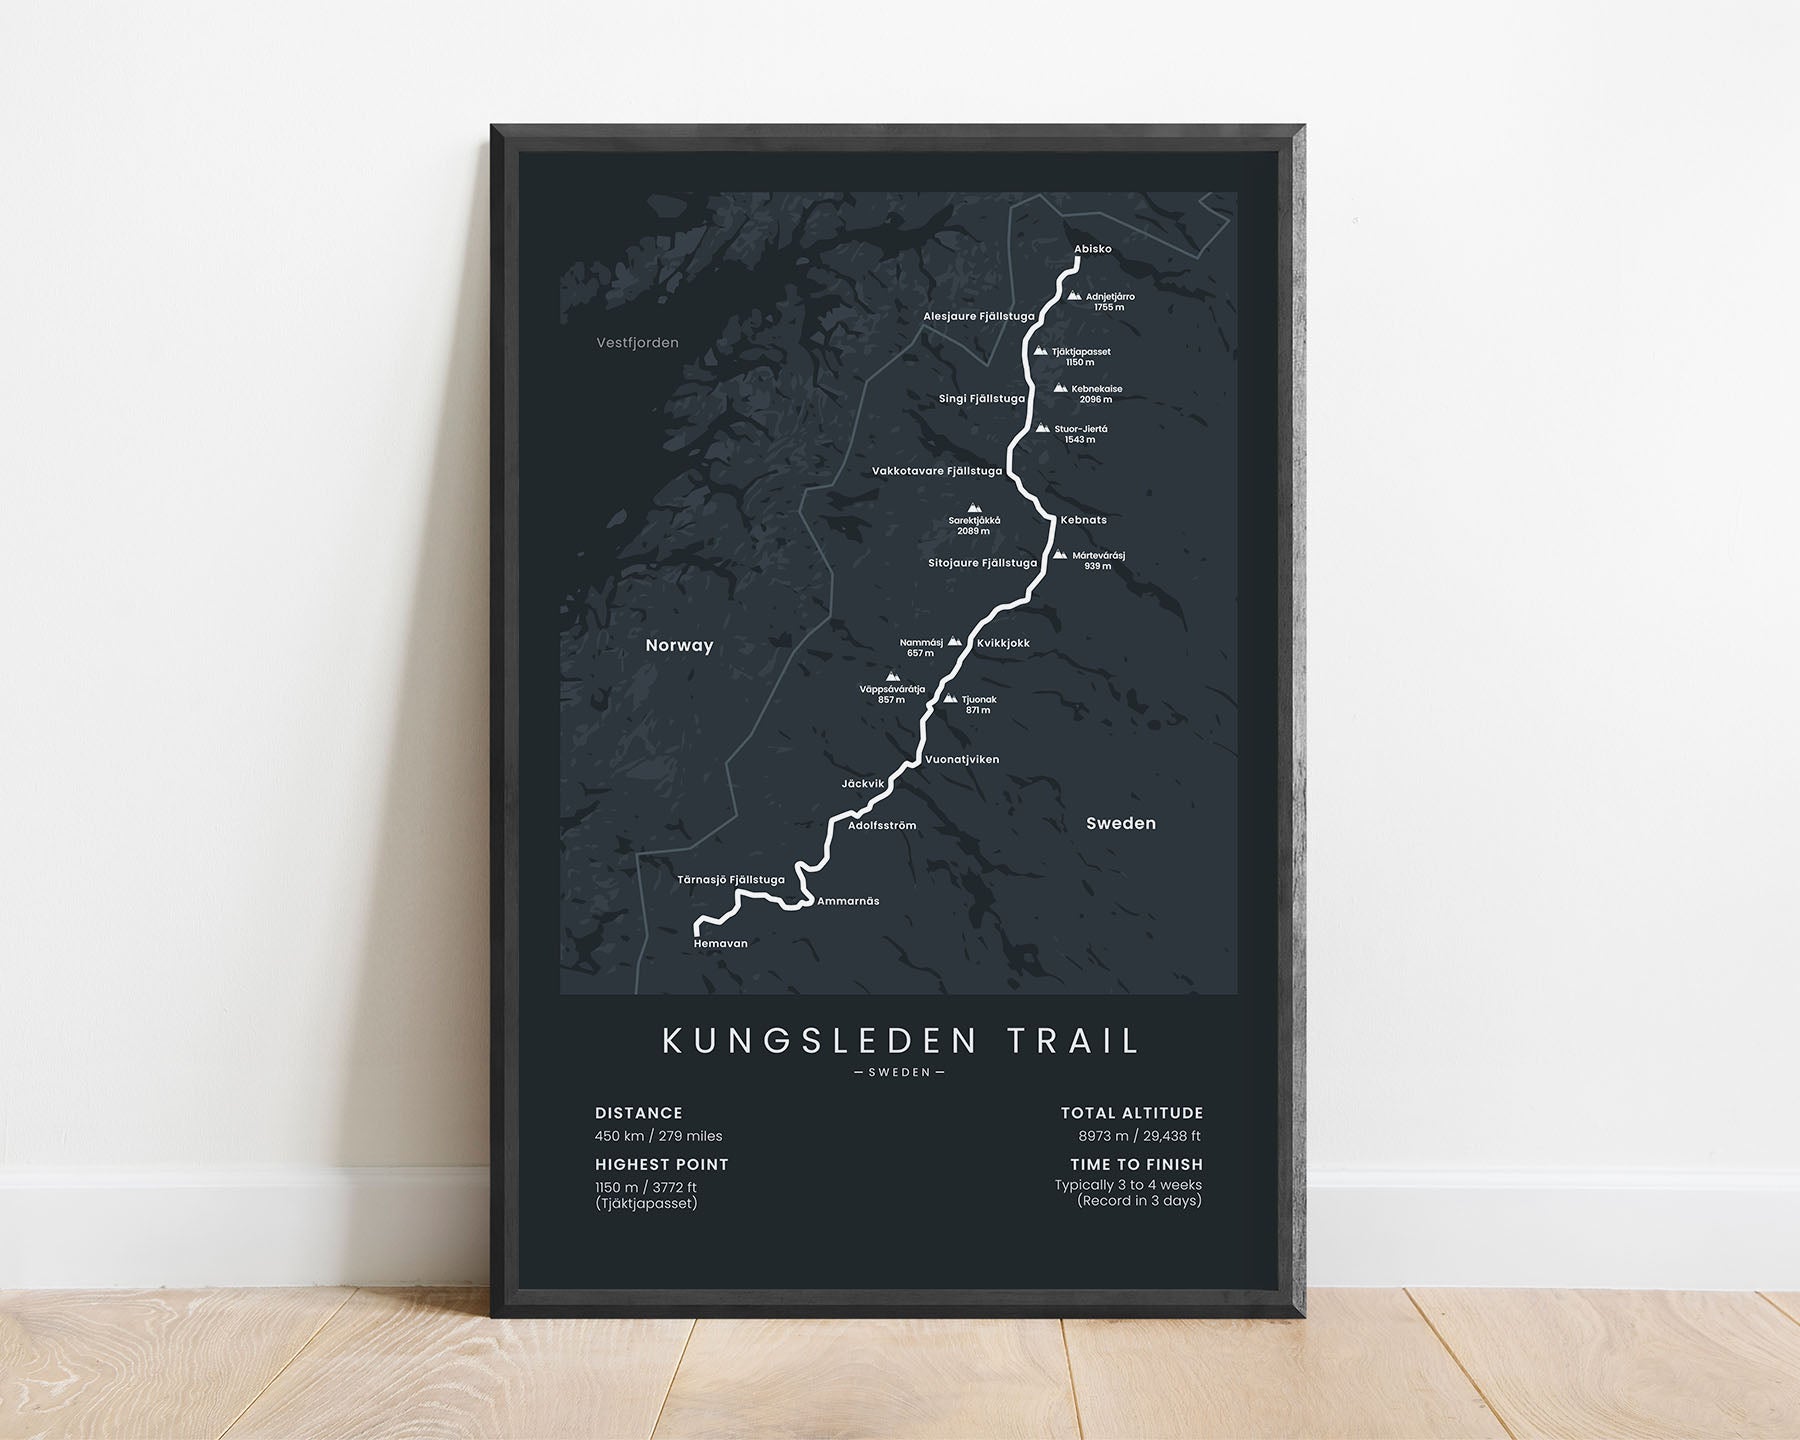 Kungsleden (Abisko to Hemavan) trail poster with black background